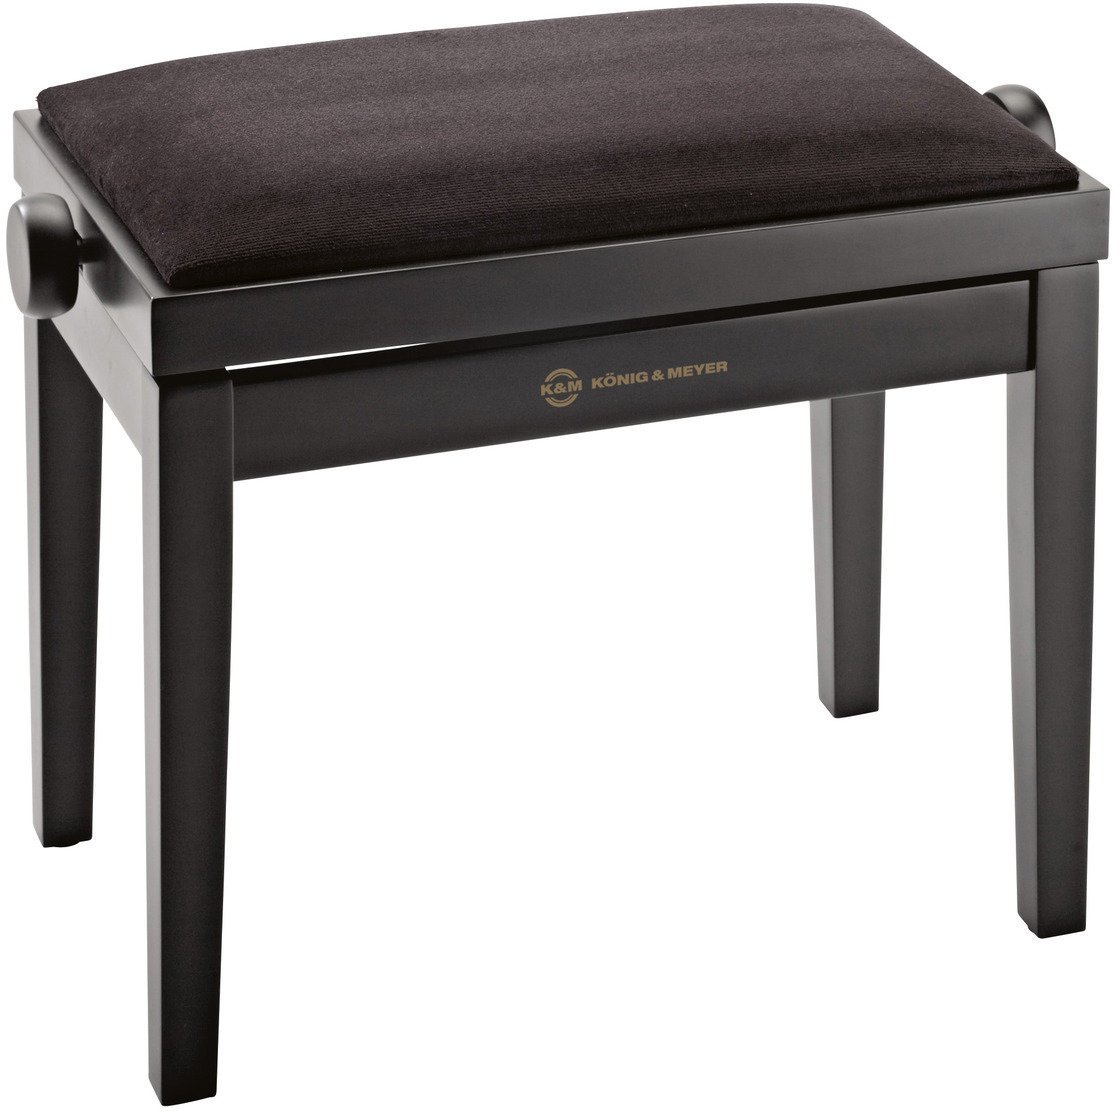 Drevené alebo klasické klavírne stoličky
 Konig & Meyer 13900 Black Matt Drevené alebo klasické klavírne stoličky